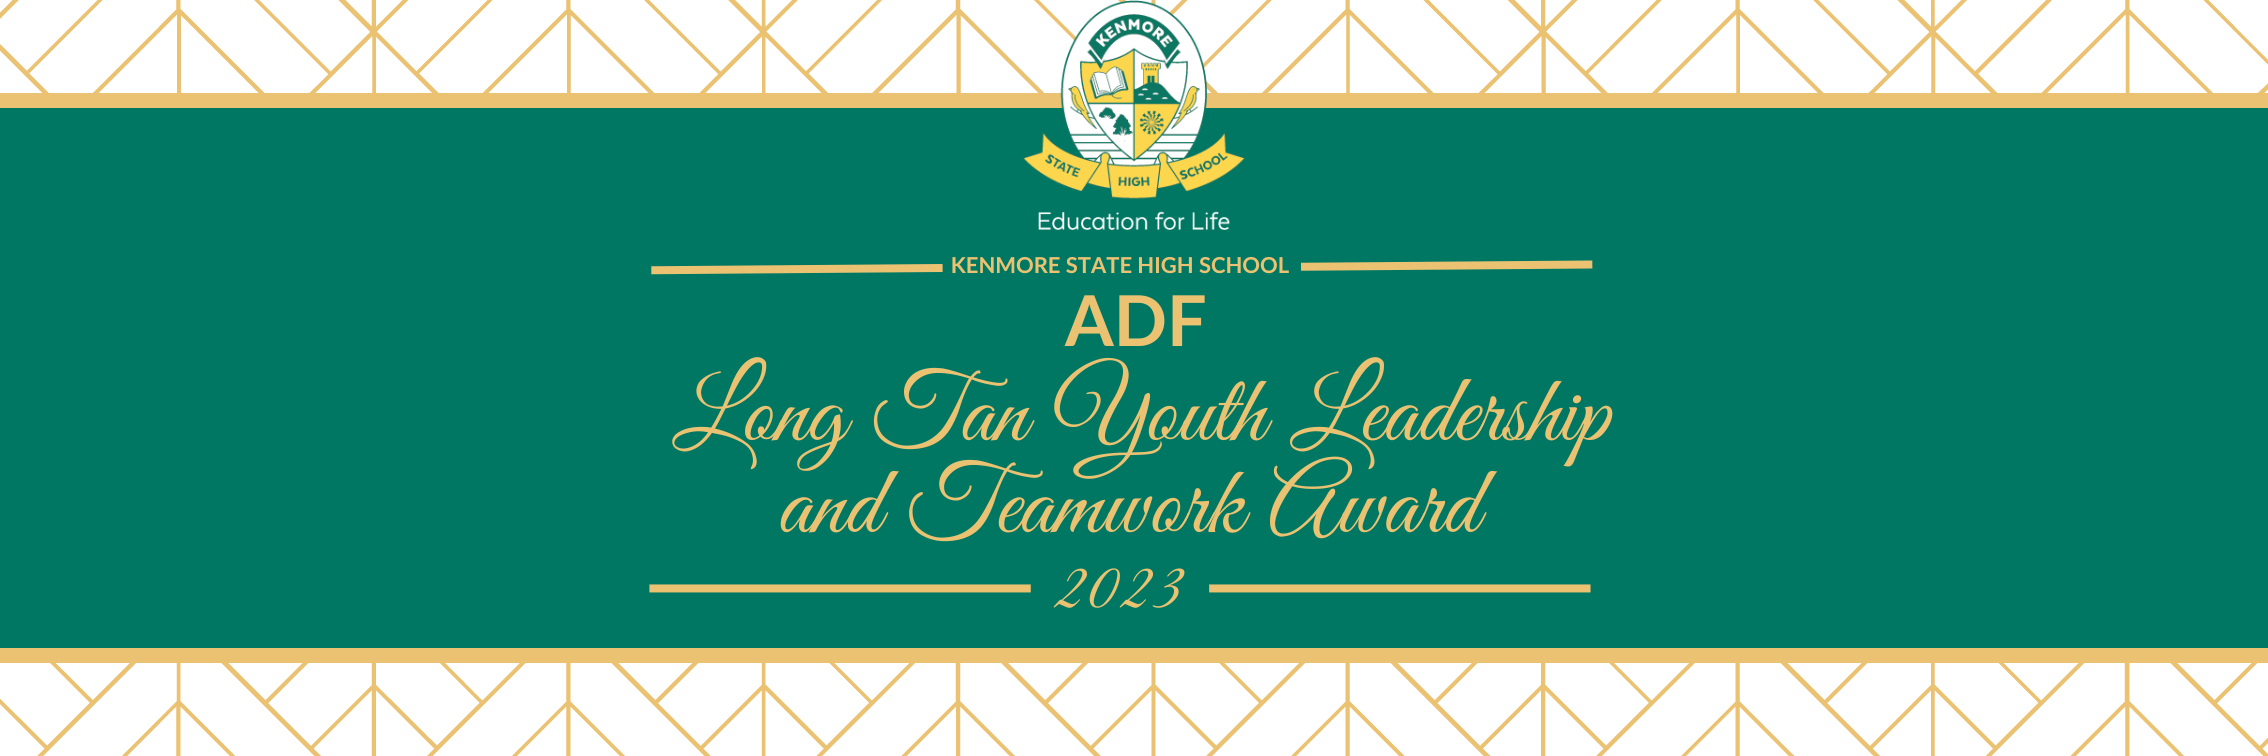 ADF Long Tan Youth Leadership and Teamwork Awards 2023